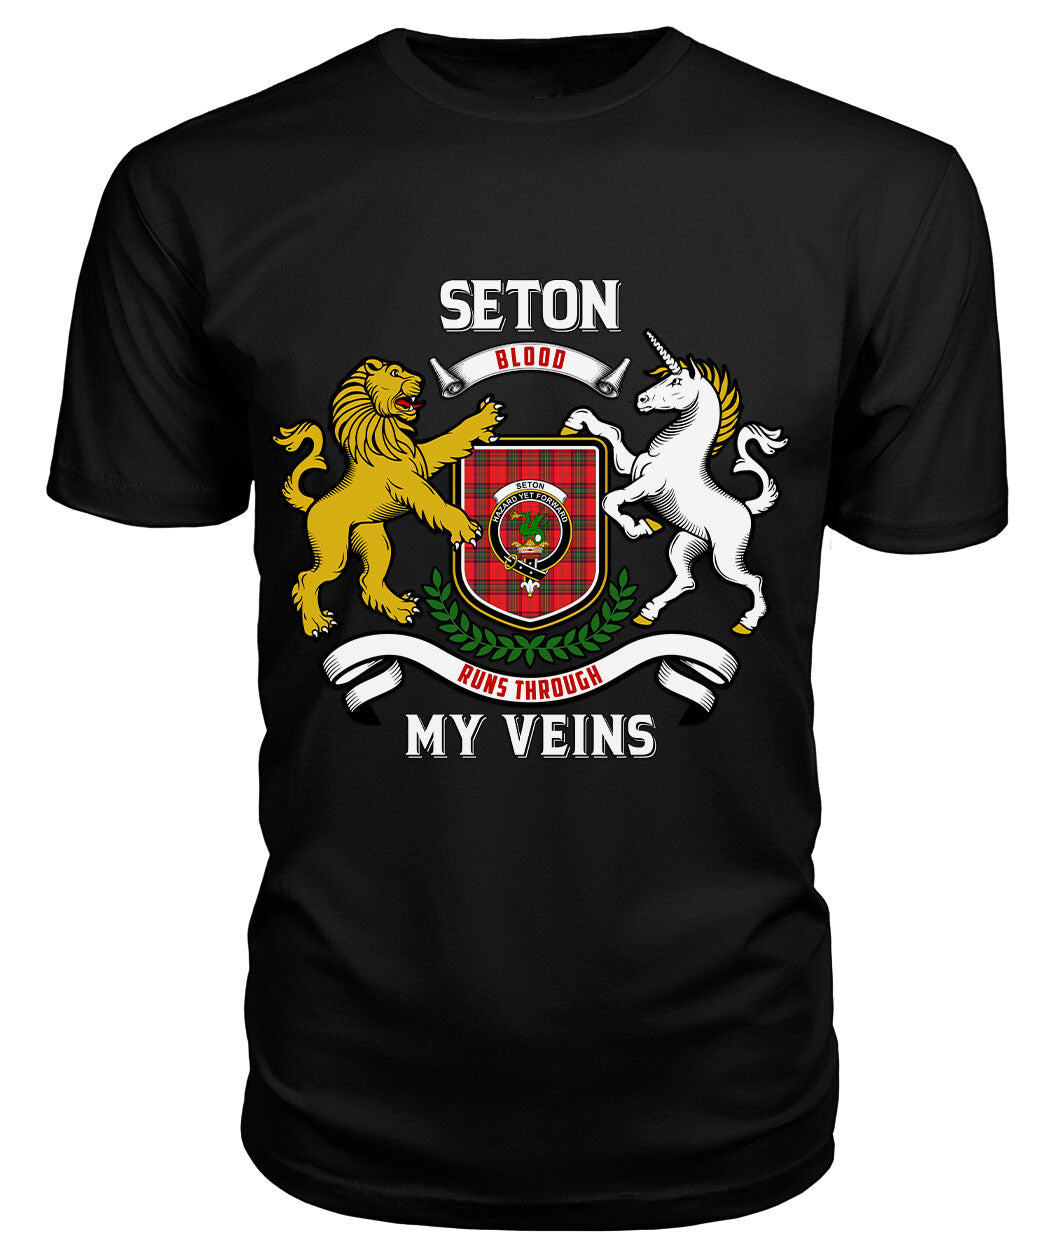 Seton Modern Tartan Crest 2D T-shirt - Blood Runs Through My Veins Style